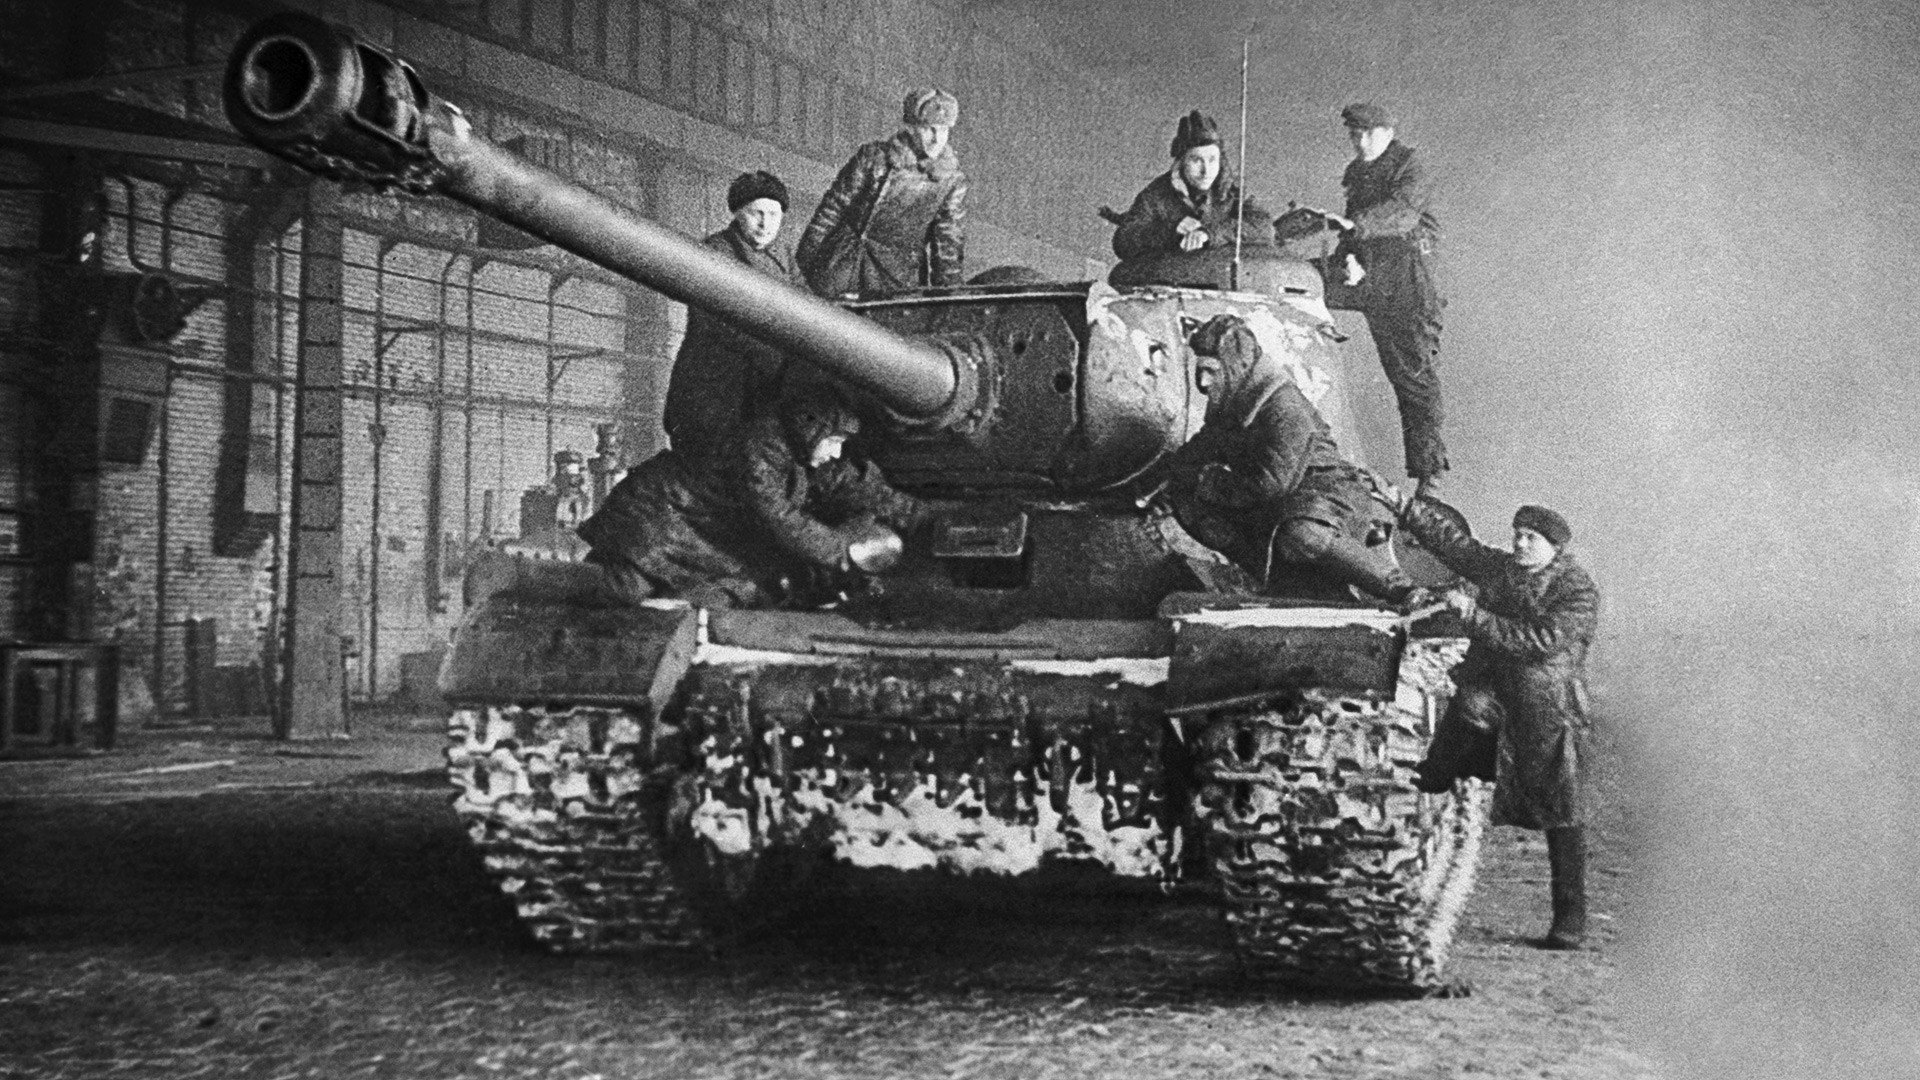 Танк войны ис. Танк ИС-2. Танк ИС 2 времен Великой Отечественной войны-. Танк ИС 2 на войне.